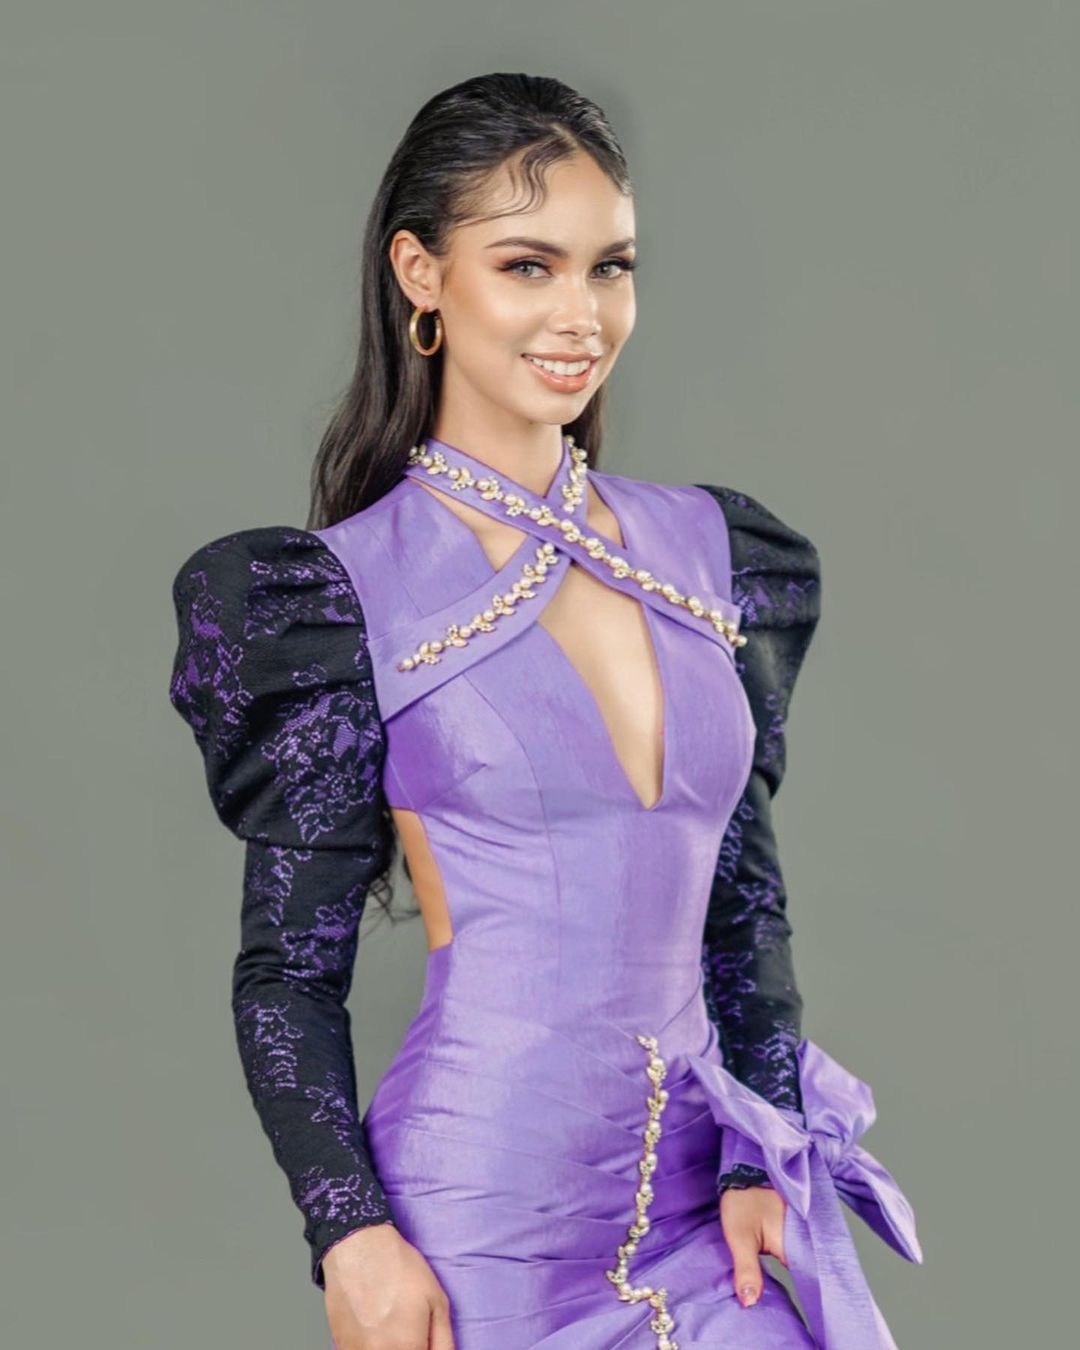 Vóc dáng đồng hồ cát của Hoa hậu Hoàn vũ Campuchia ảnh 11